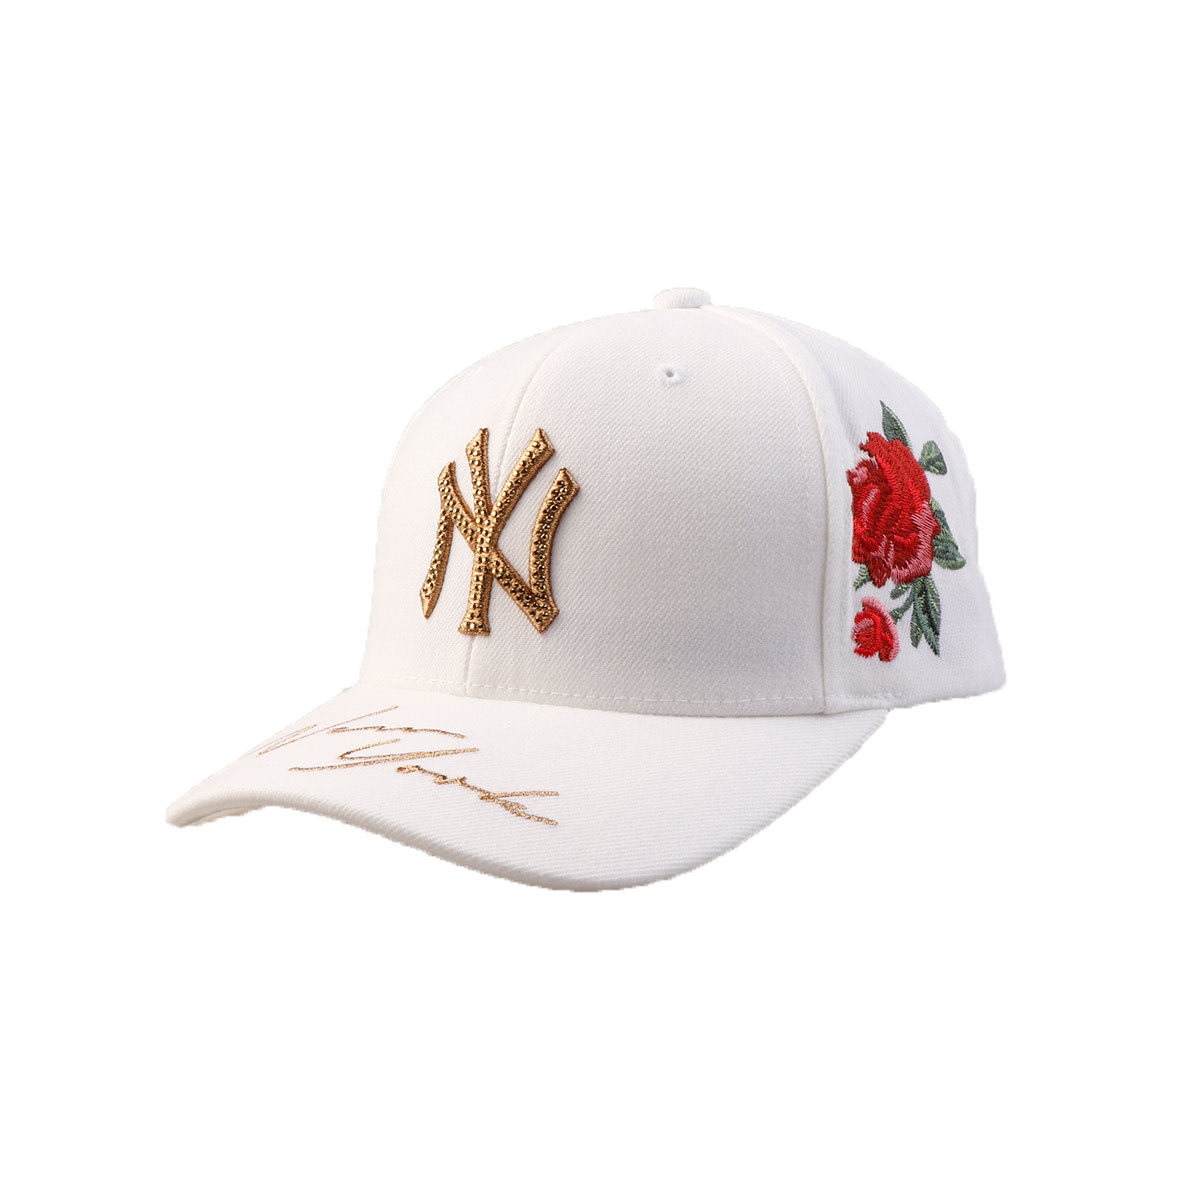 MLB 棒球帽子NY洋基队鸭舌帽 经典白色侧边刺绣玫瑰花男女通用款 32CPFB711-50W